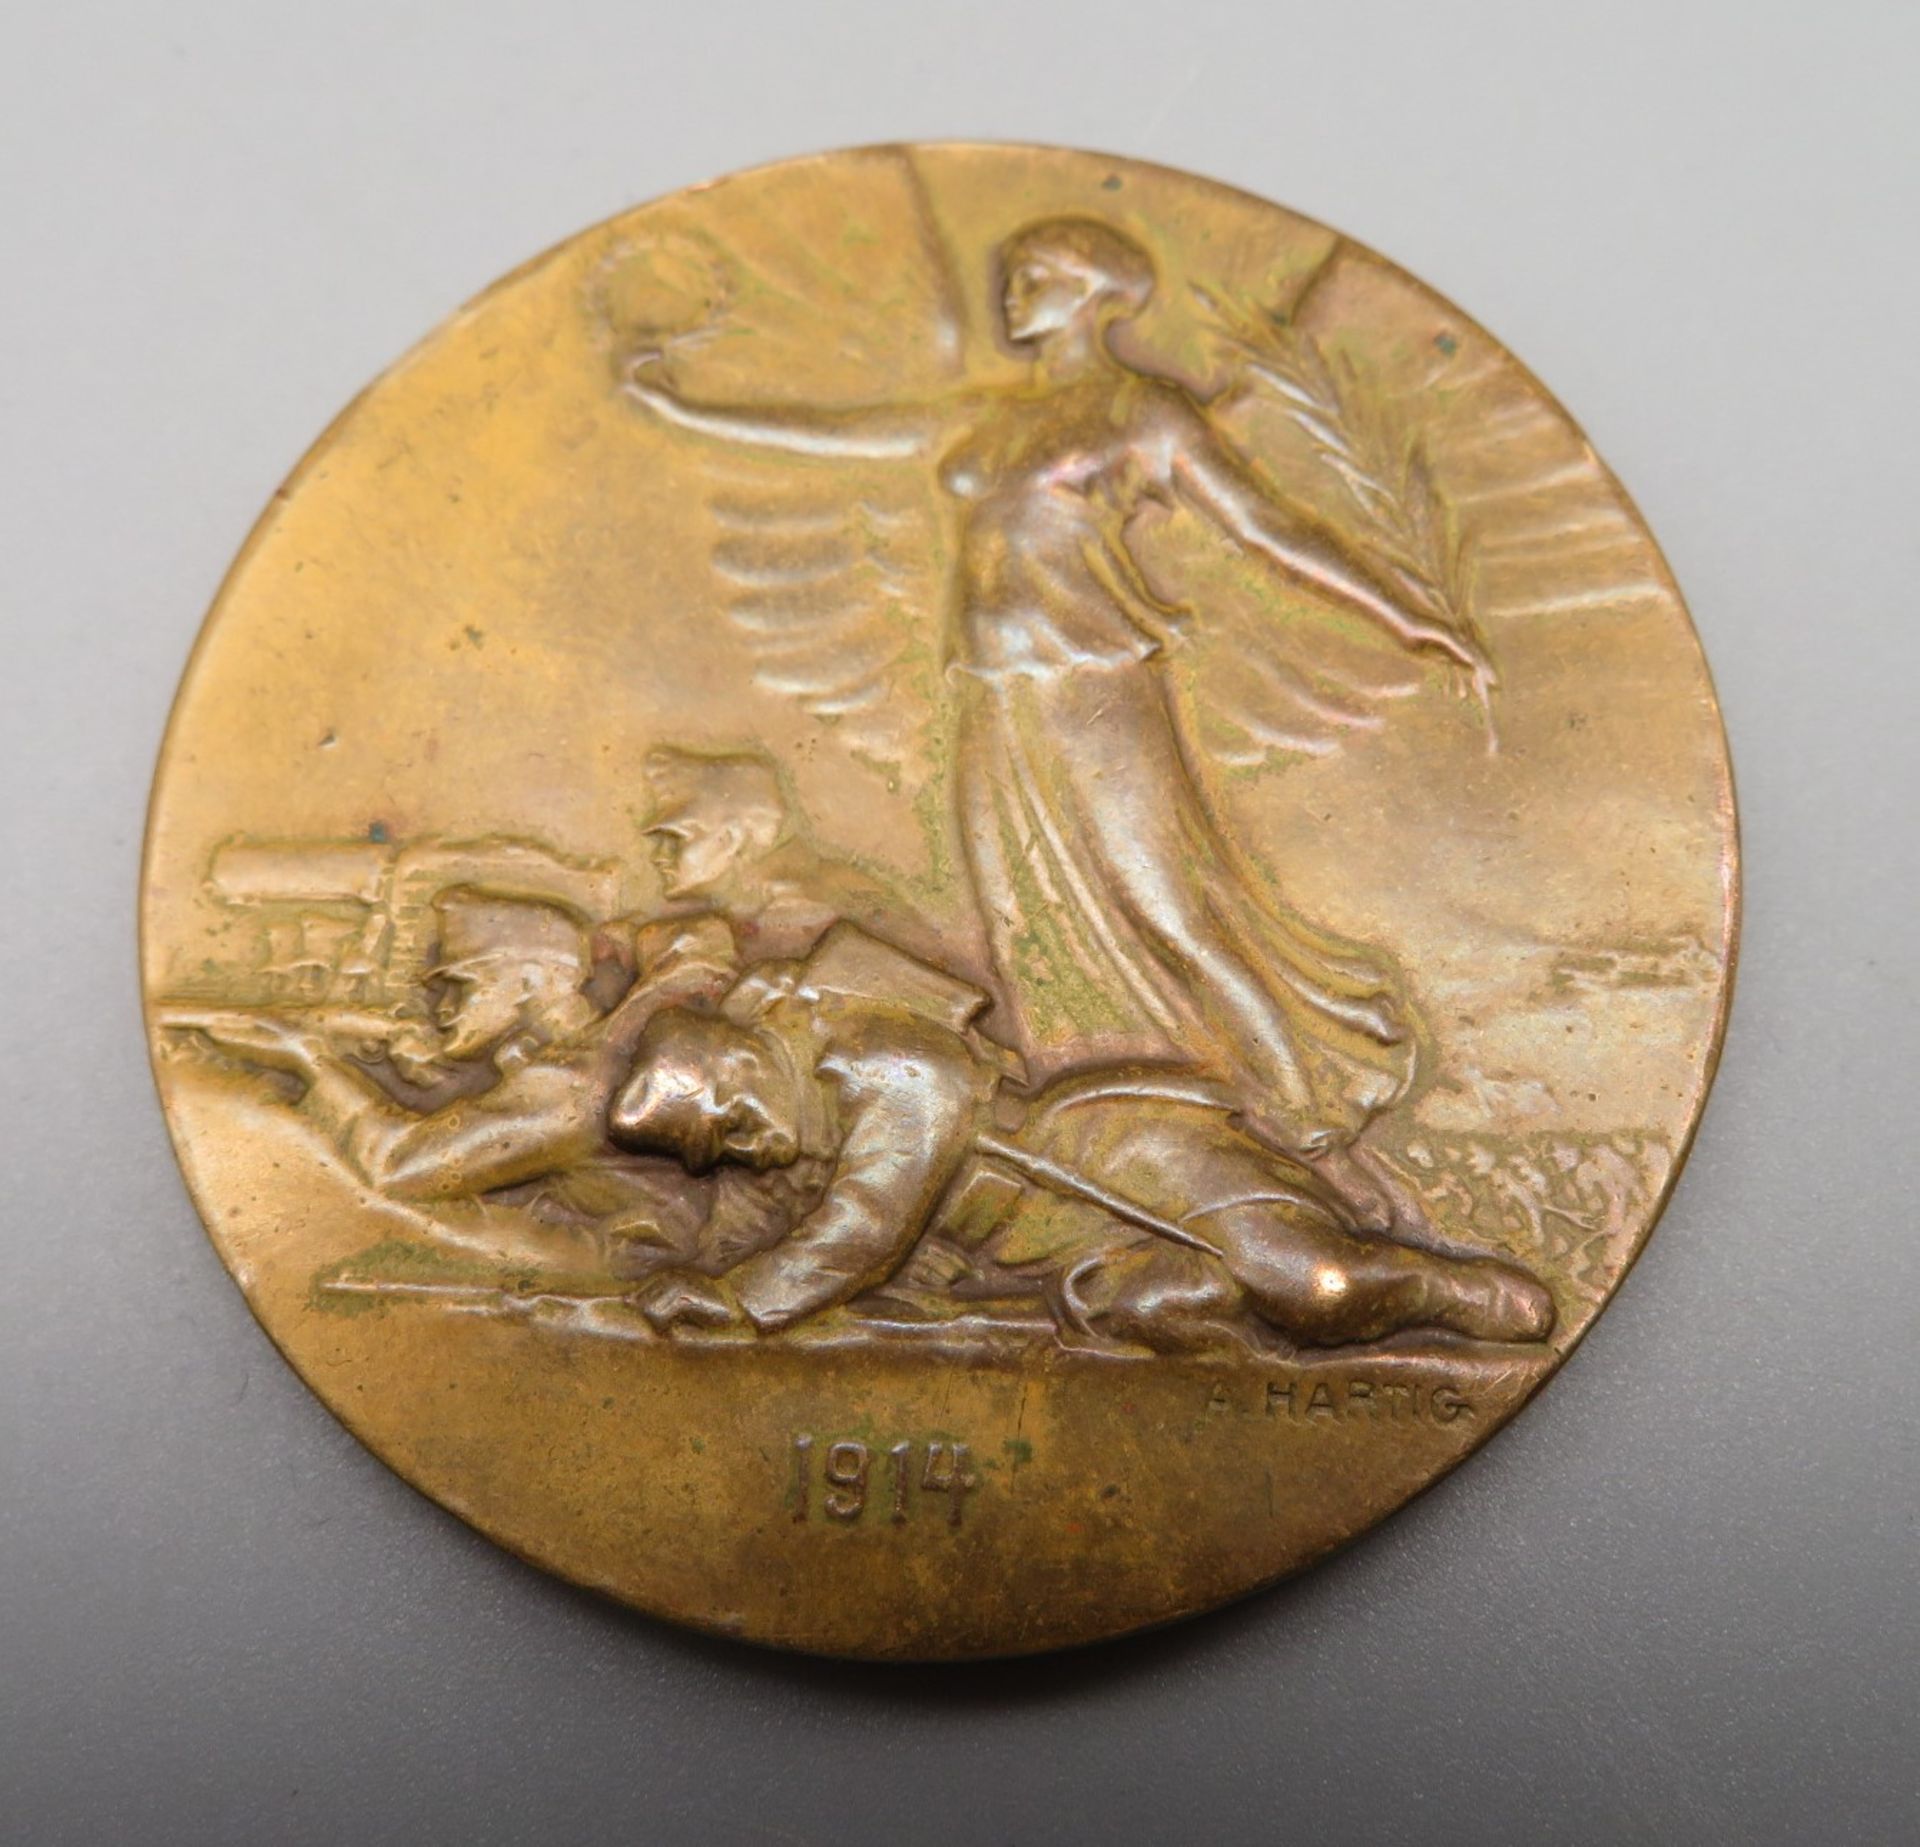 Neuberger, R./Hartig, Arnold (1878 - 1972), Medaille mit Porträt des Franz Joseph I. von Österreic - Image 2 of 2